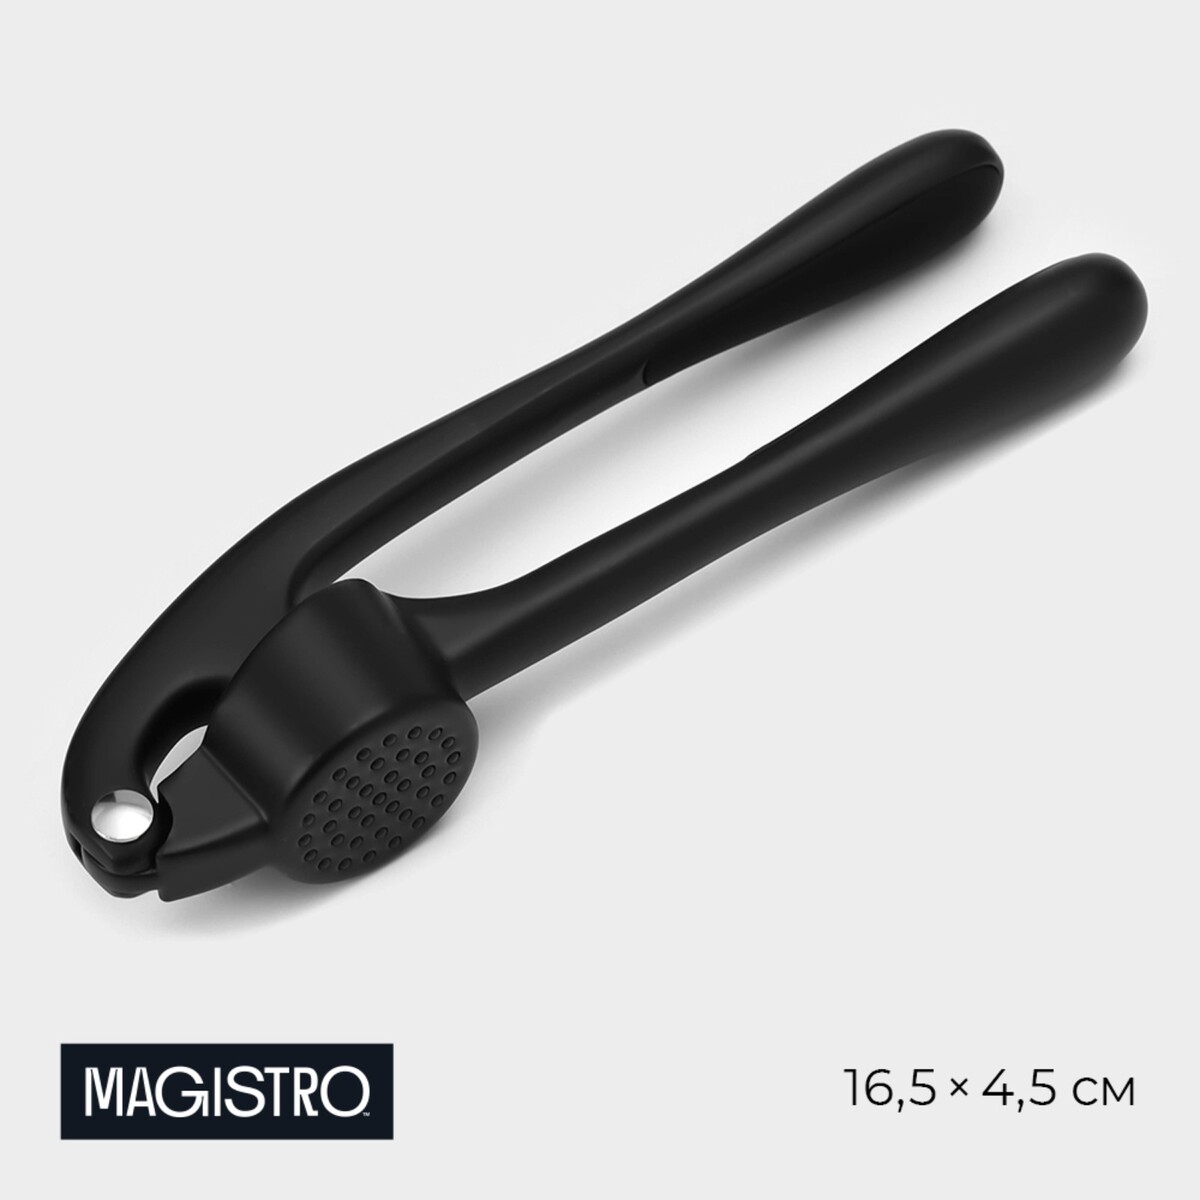 Пресс для чеснока magistro vantablack, 16,5×4,5 см, цвет черный гиря обрезиненная 24 кг hercules hk109 24 с хромированной ручкой